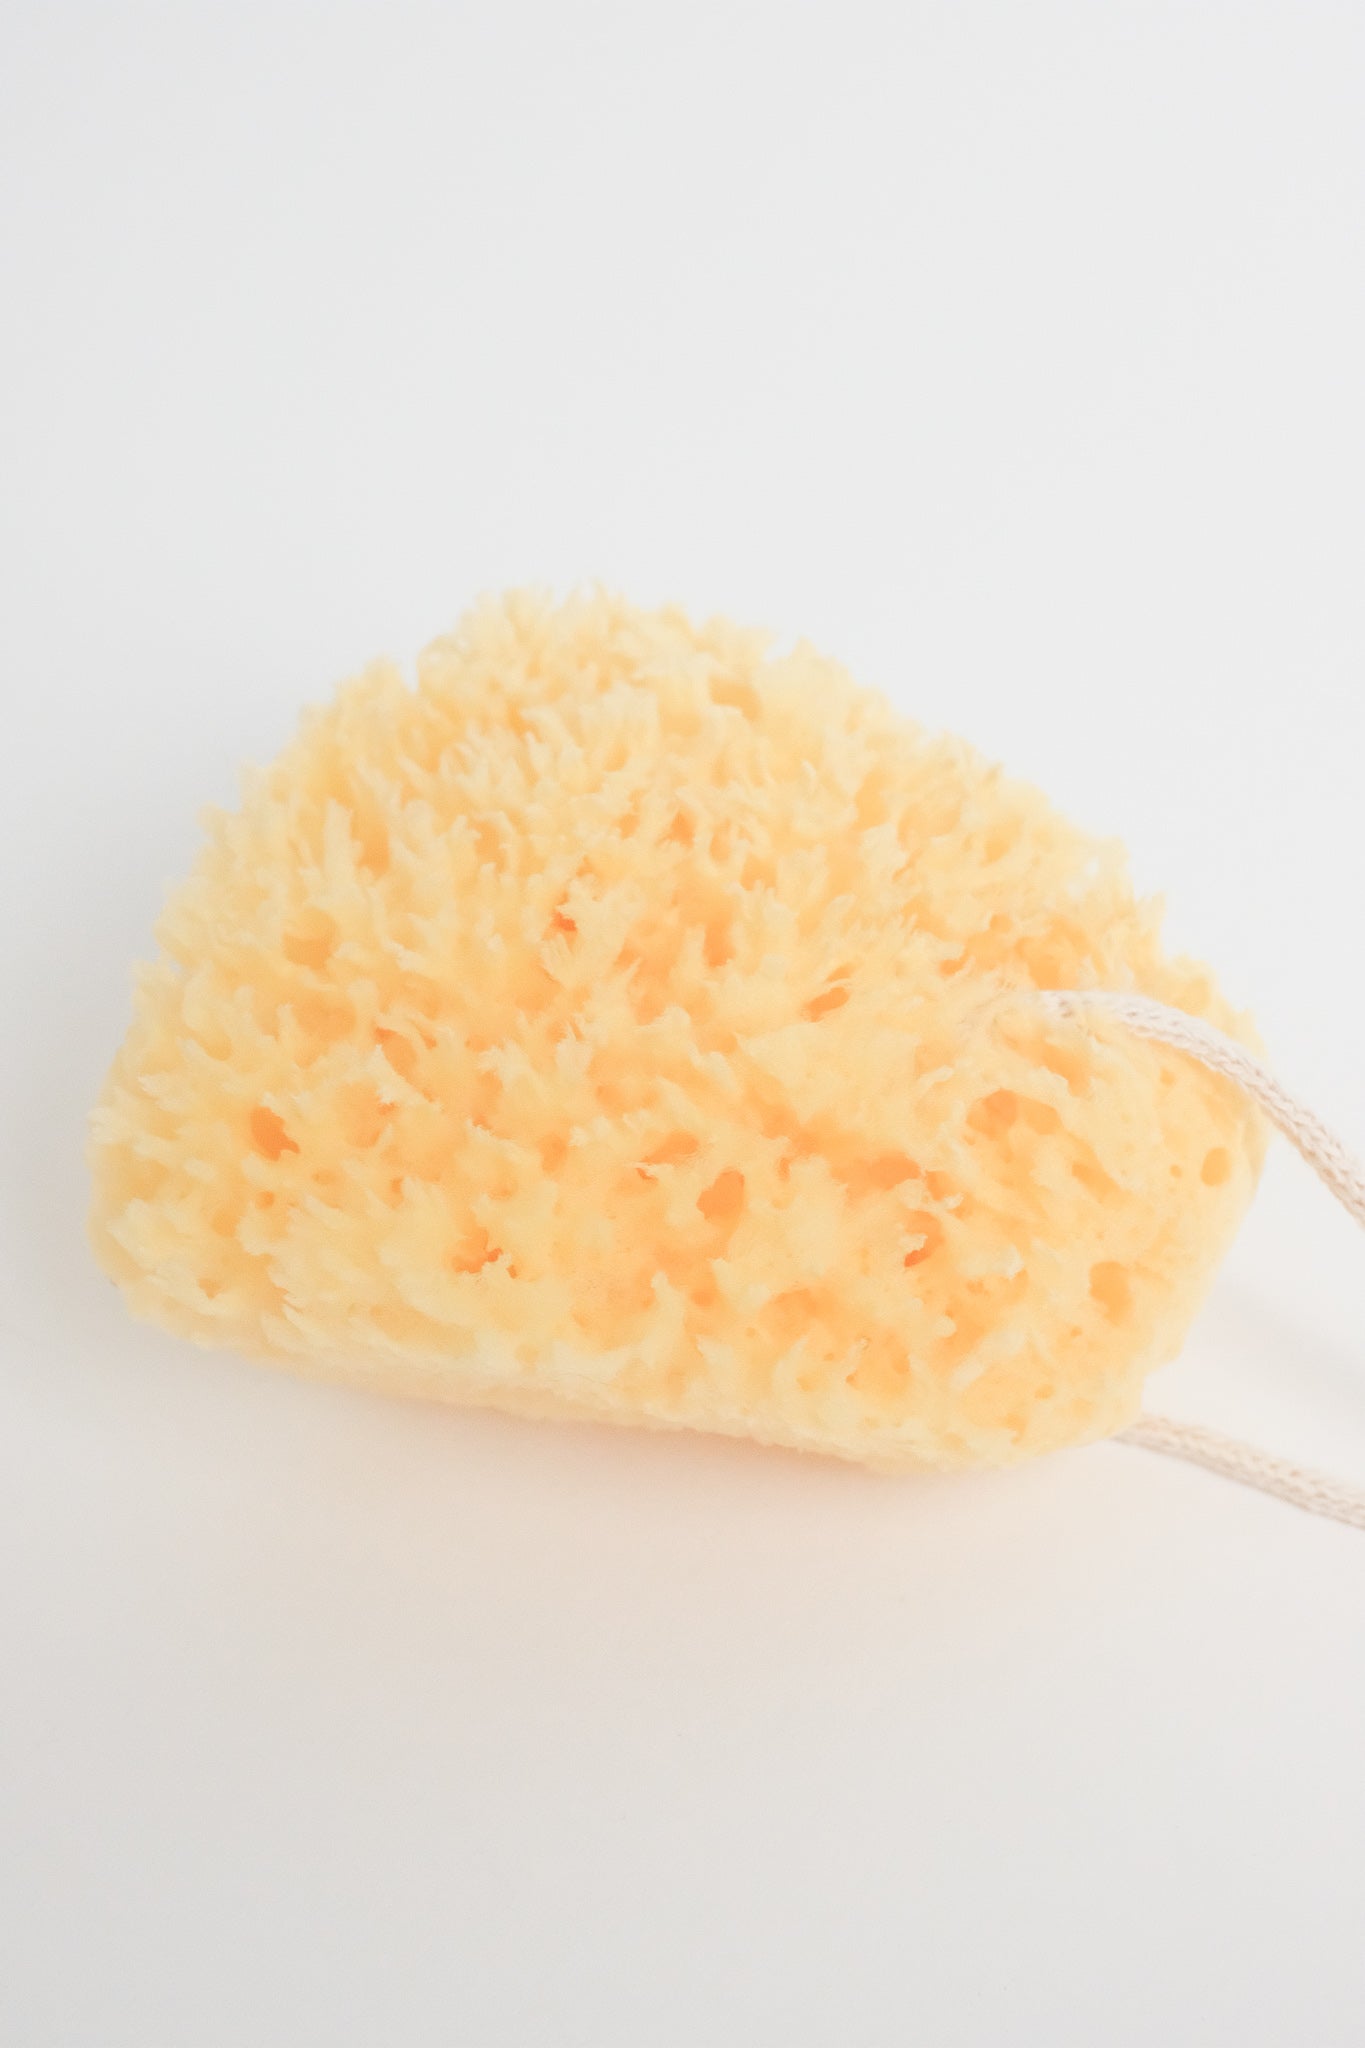 sponges s/2, soft scrub - Whisk